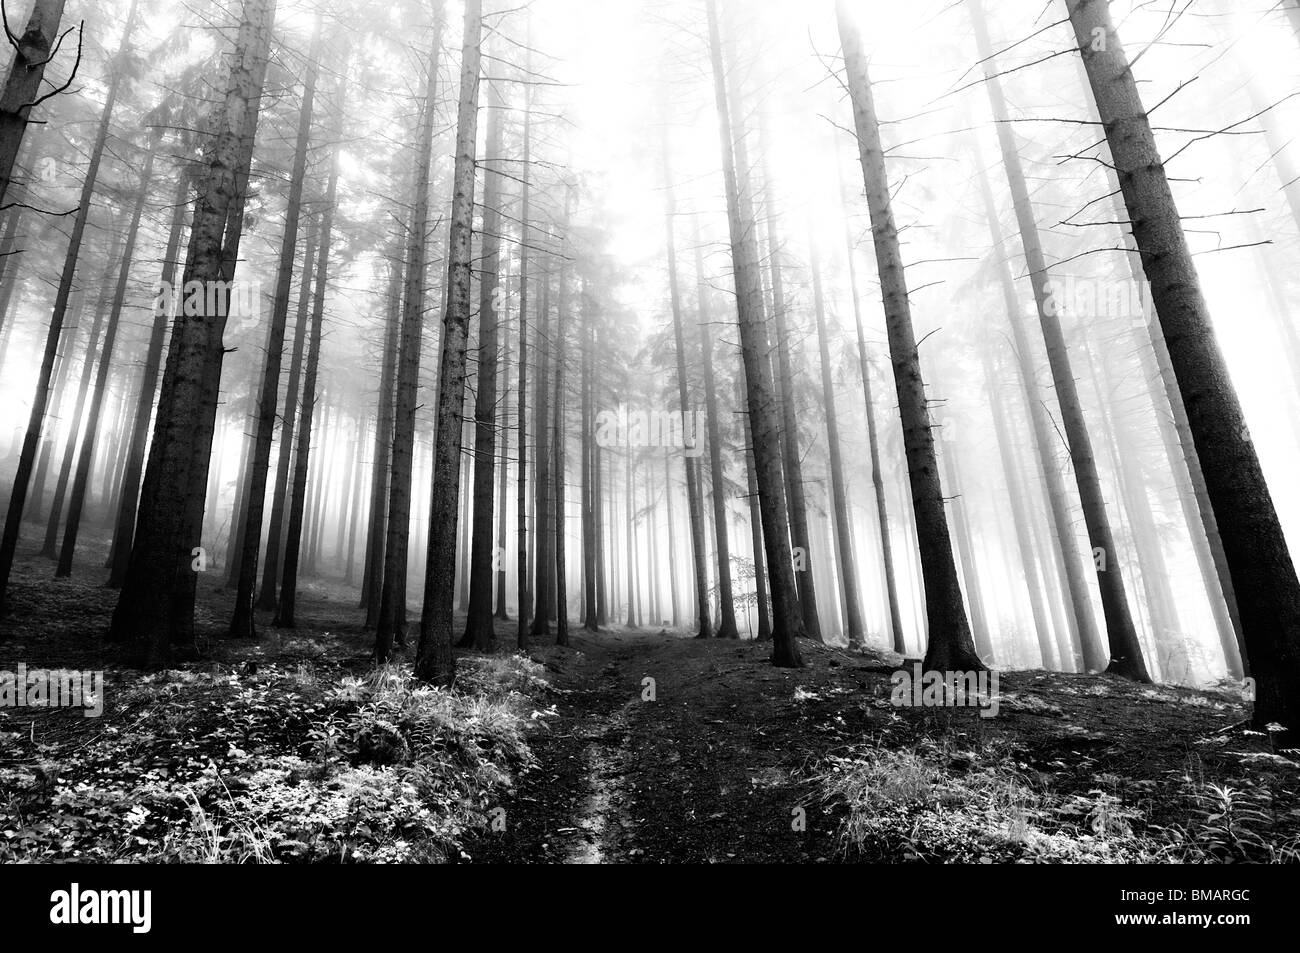 Image de la forêt de conifères au début de la matinée - brouillard tôt le matin Banque D'Images